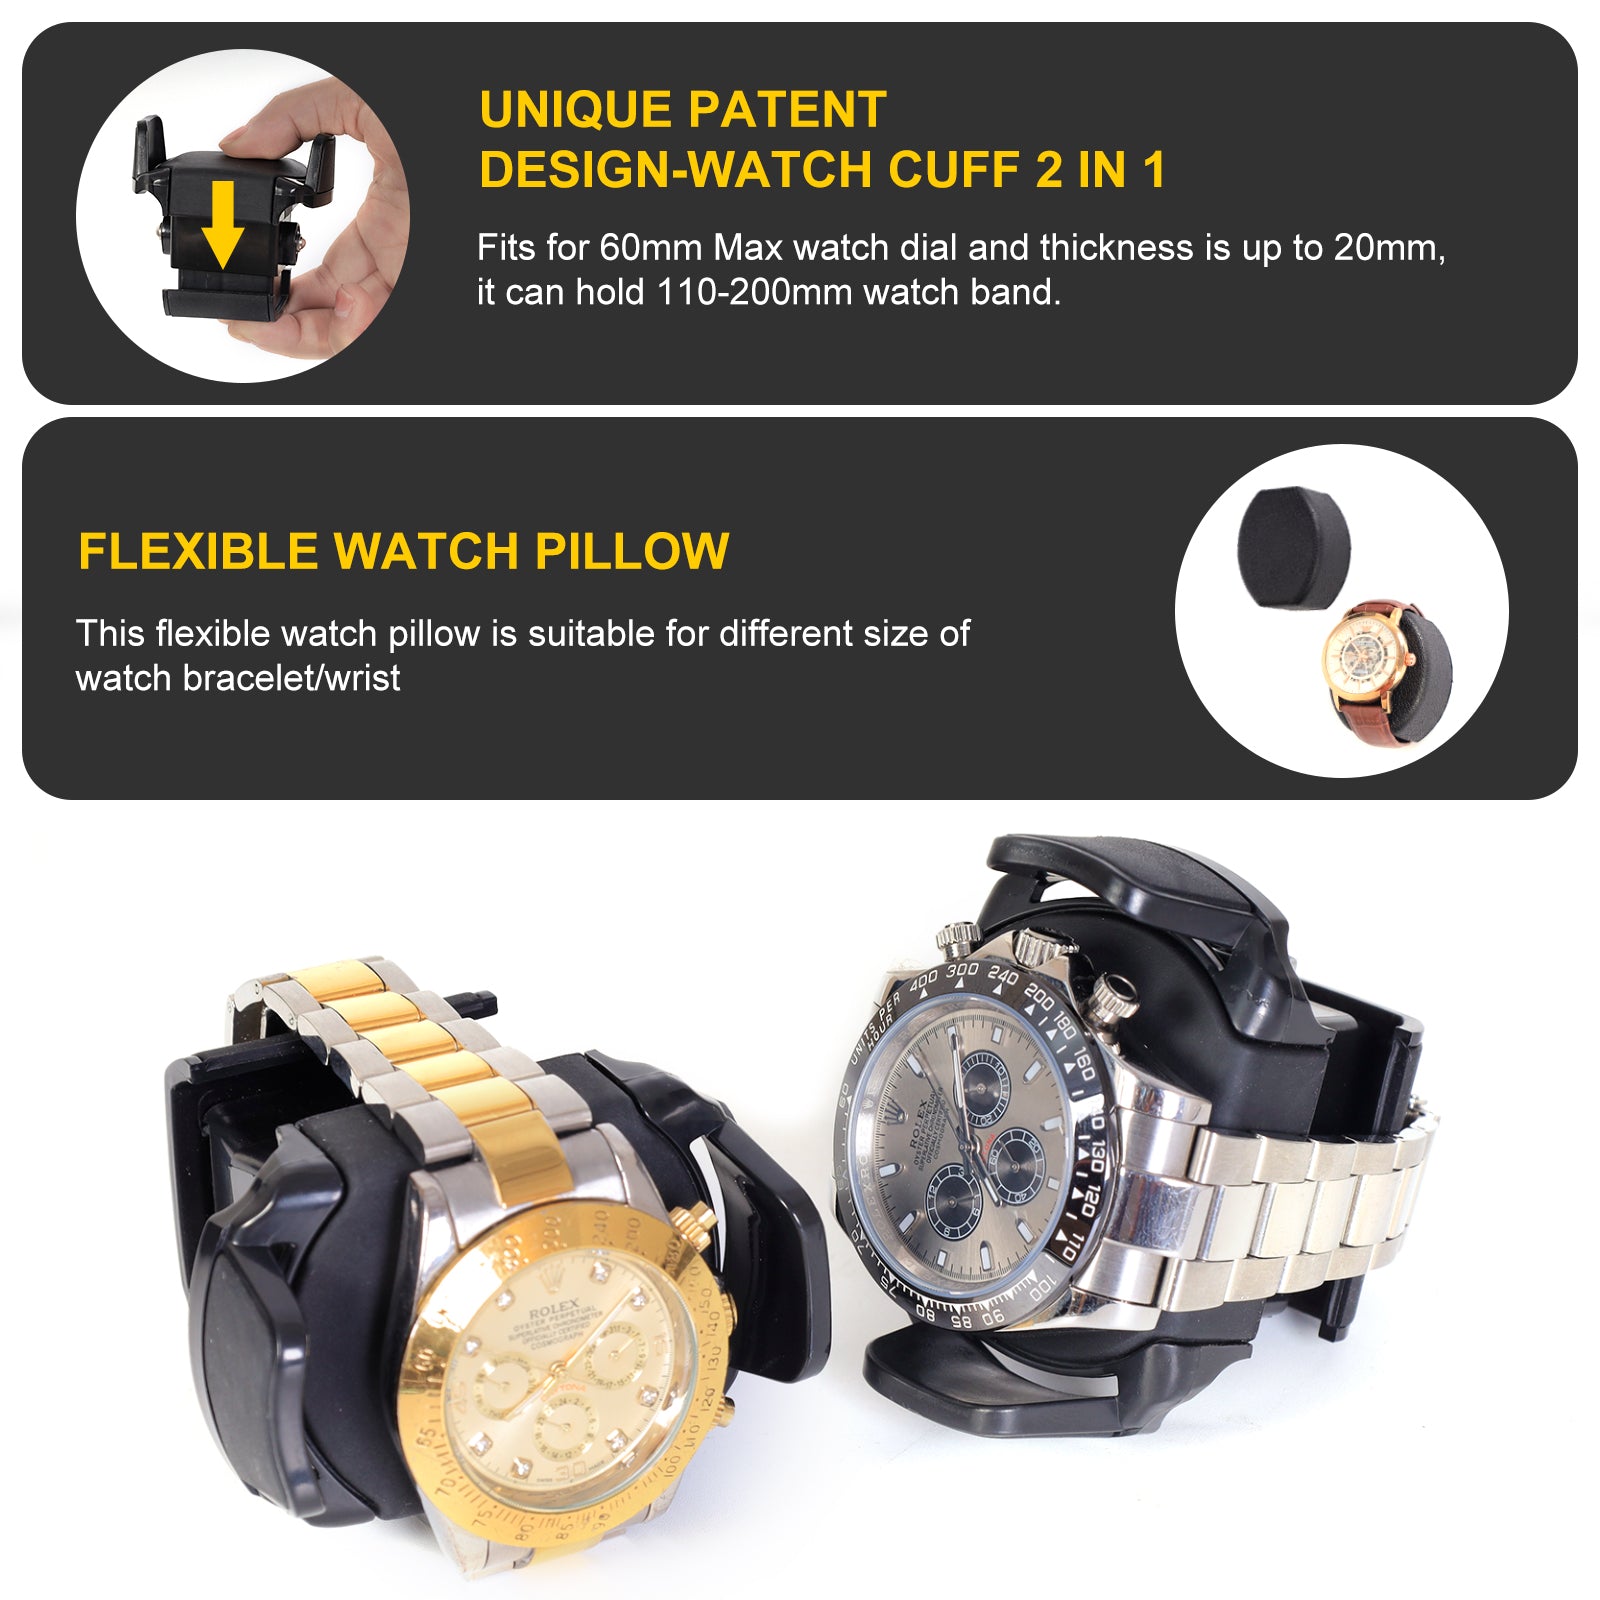 Remontoirs compacts pour 2 montres avec rangement pour 3 montres - Noir